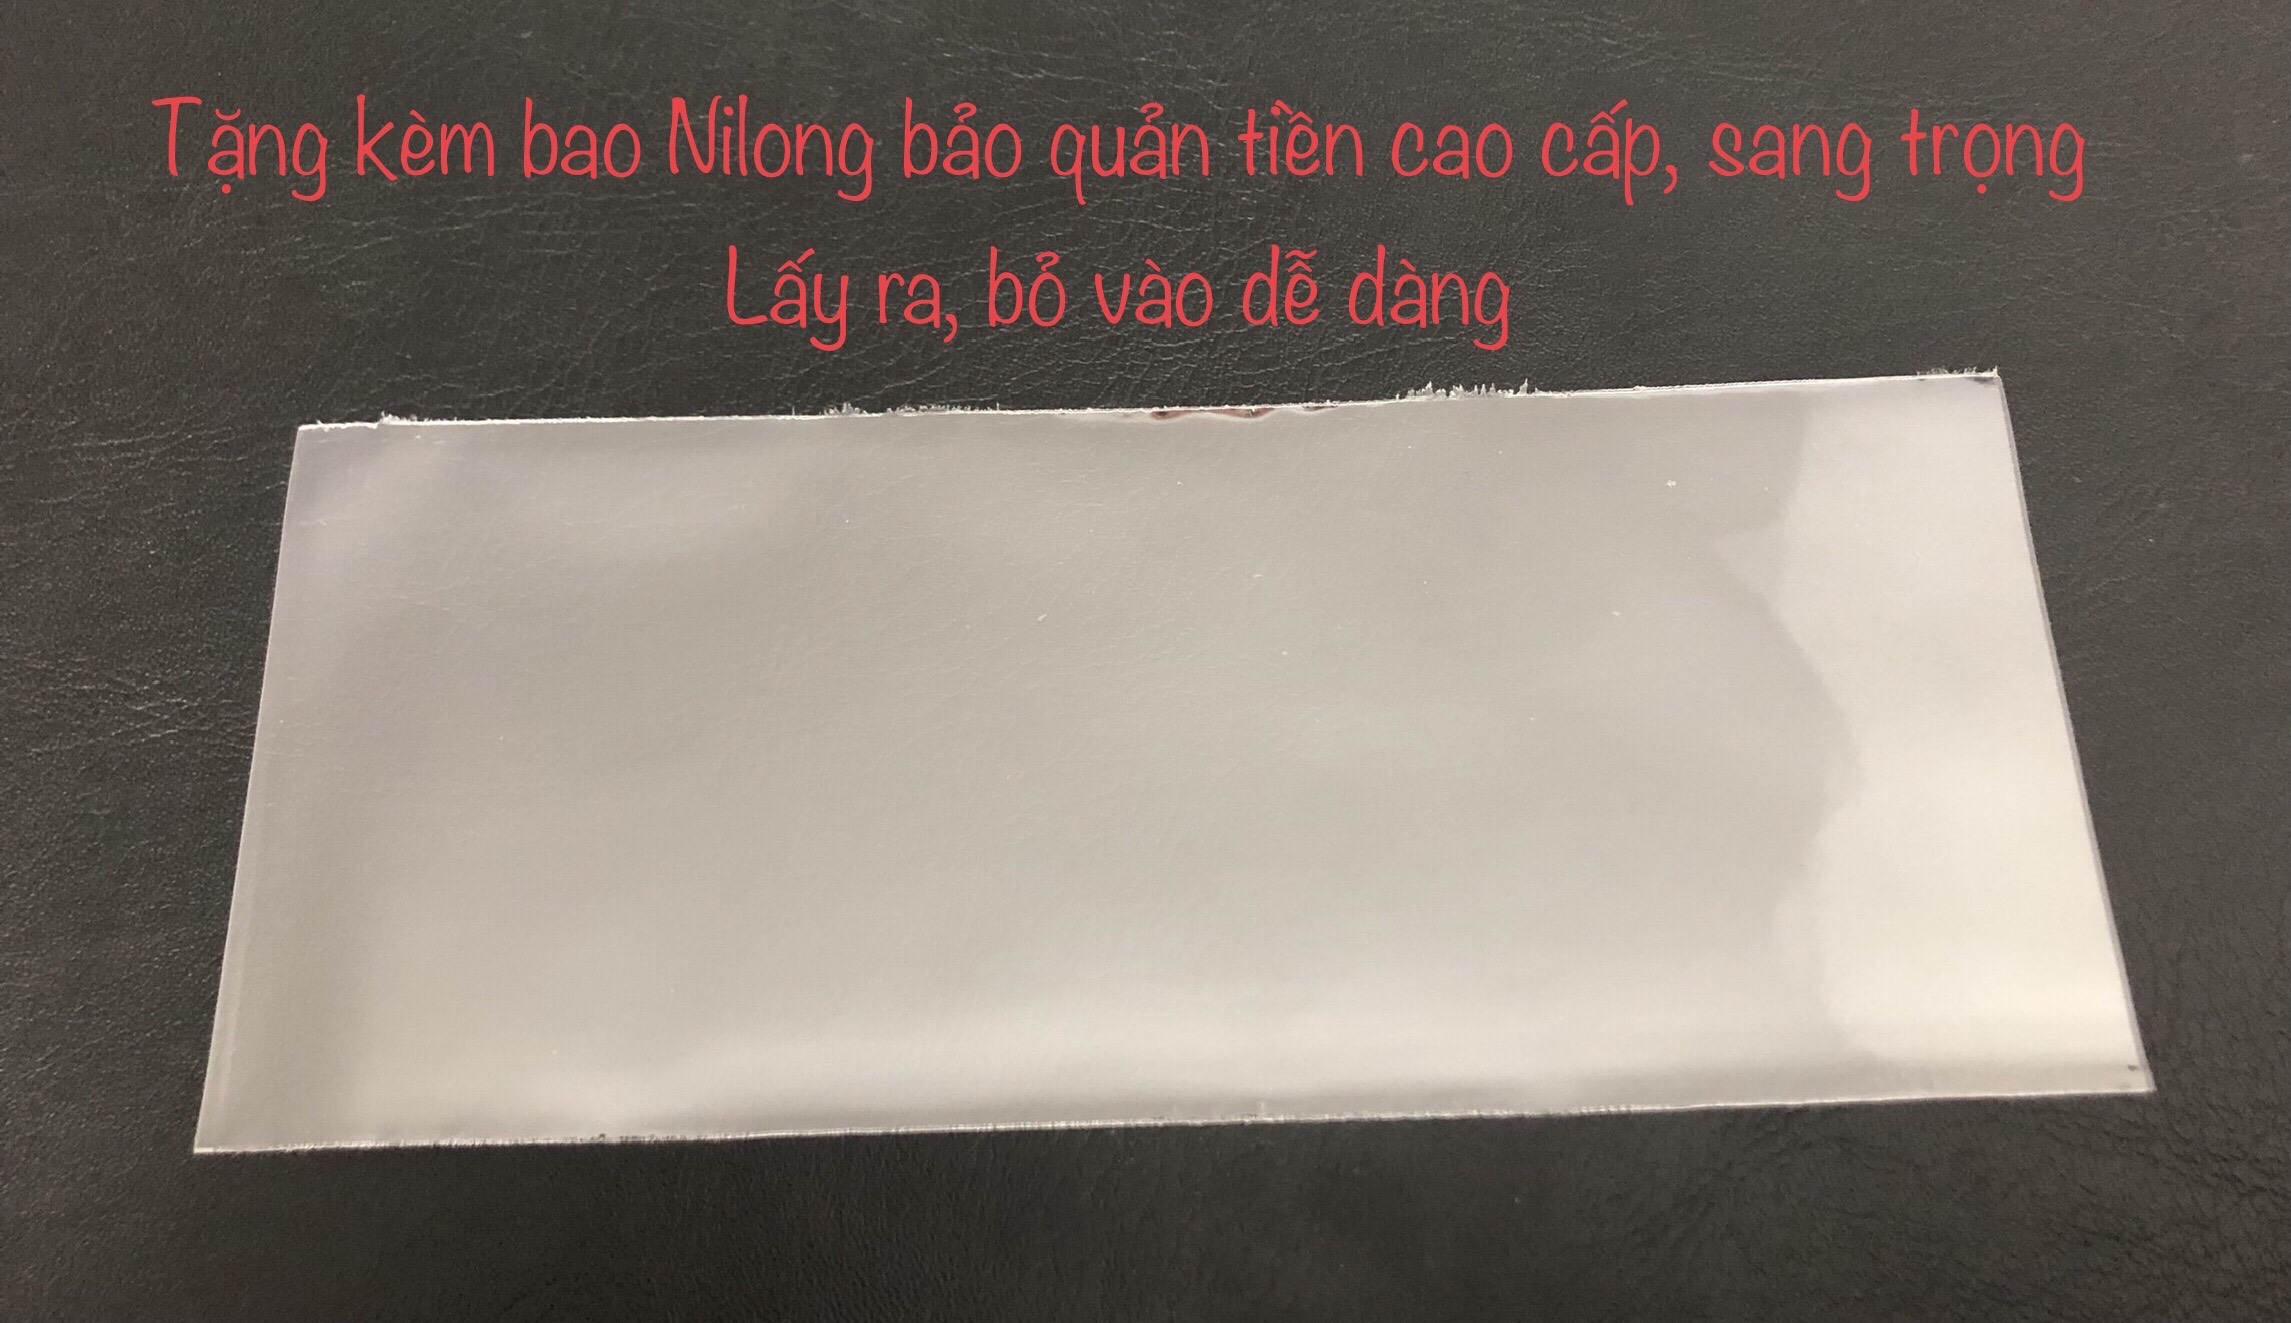 Bộ 3 tờ tiền 10 đồng Việt Nam phát hành khác giai đoạn, tặng kèm bao nilong bảo quản